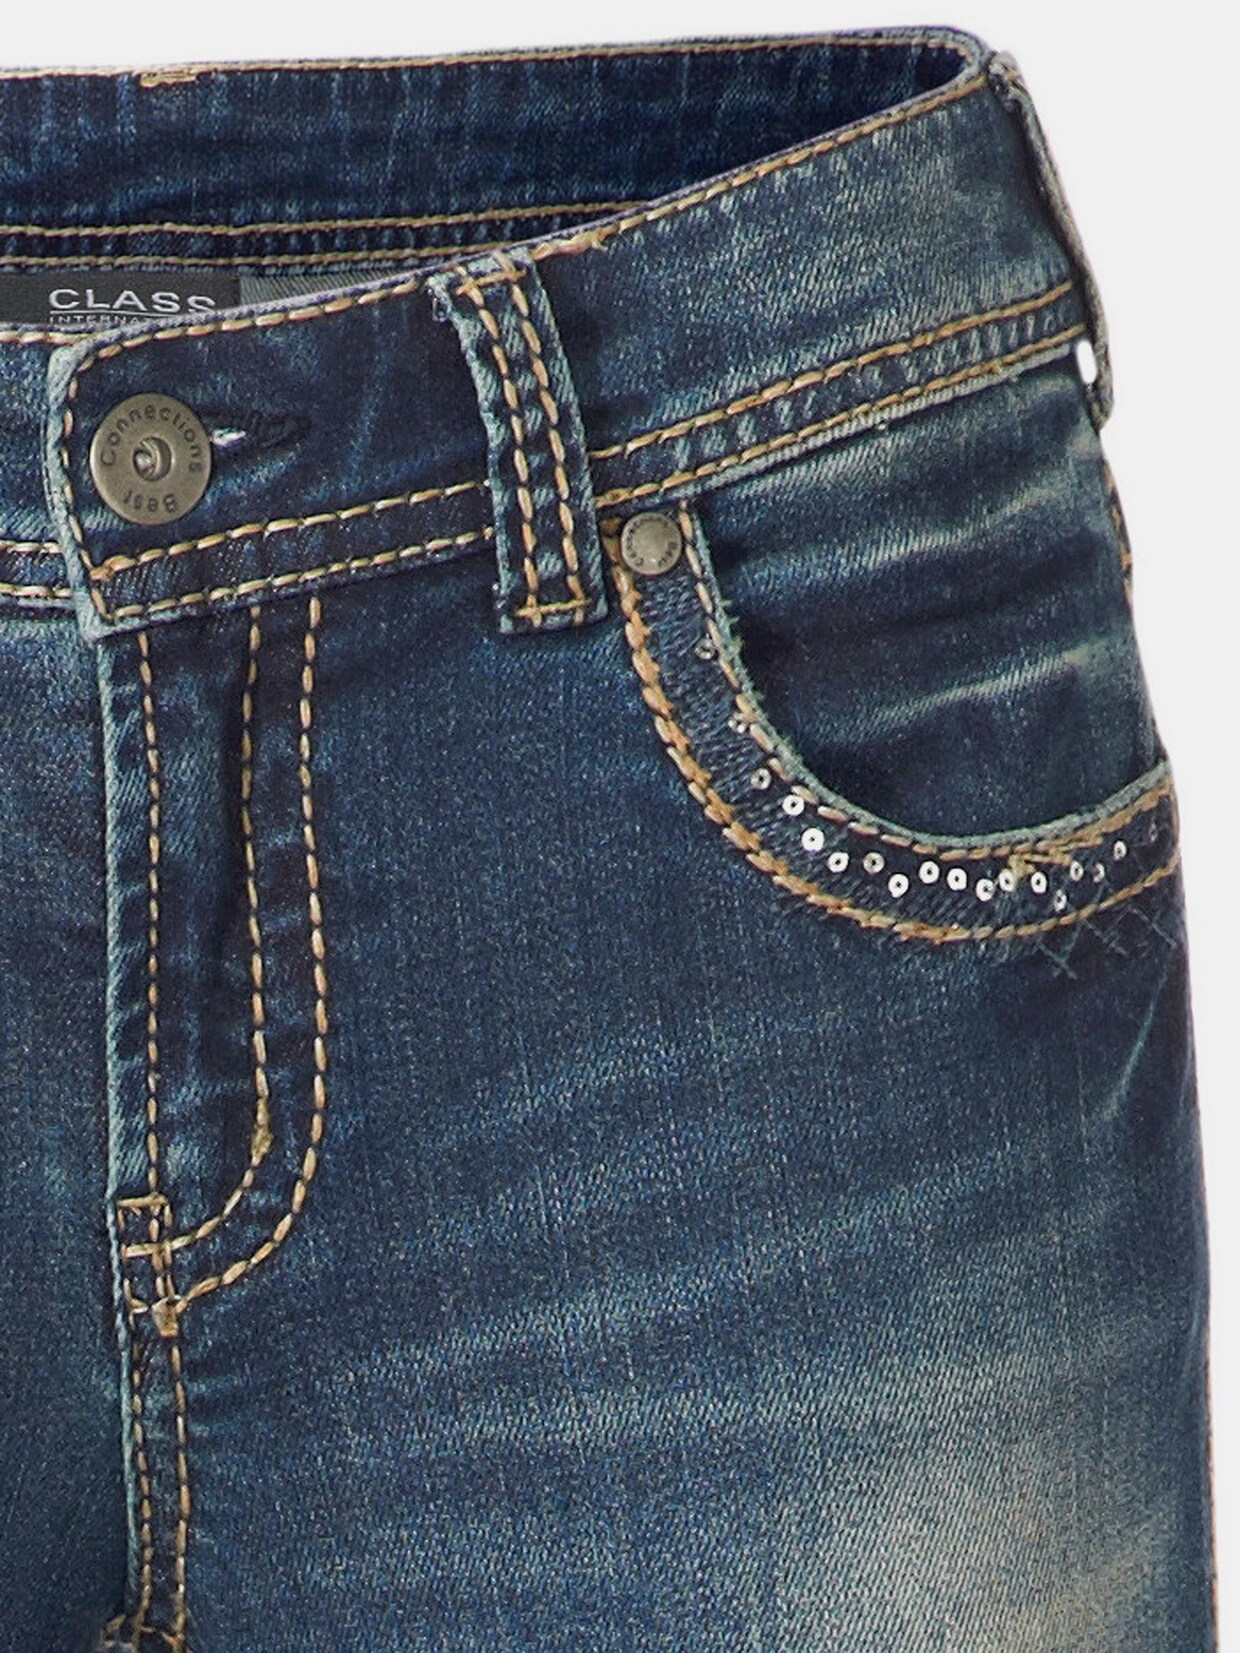 Rick Cardona jeans effet ventre plat - bleu délavé